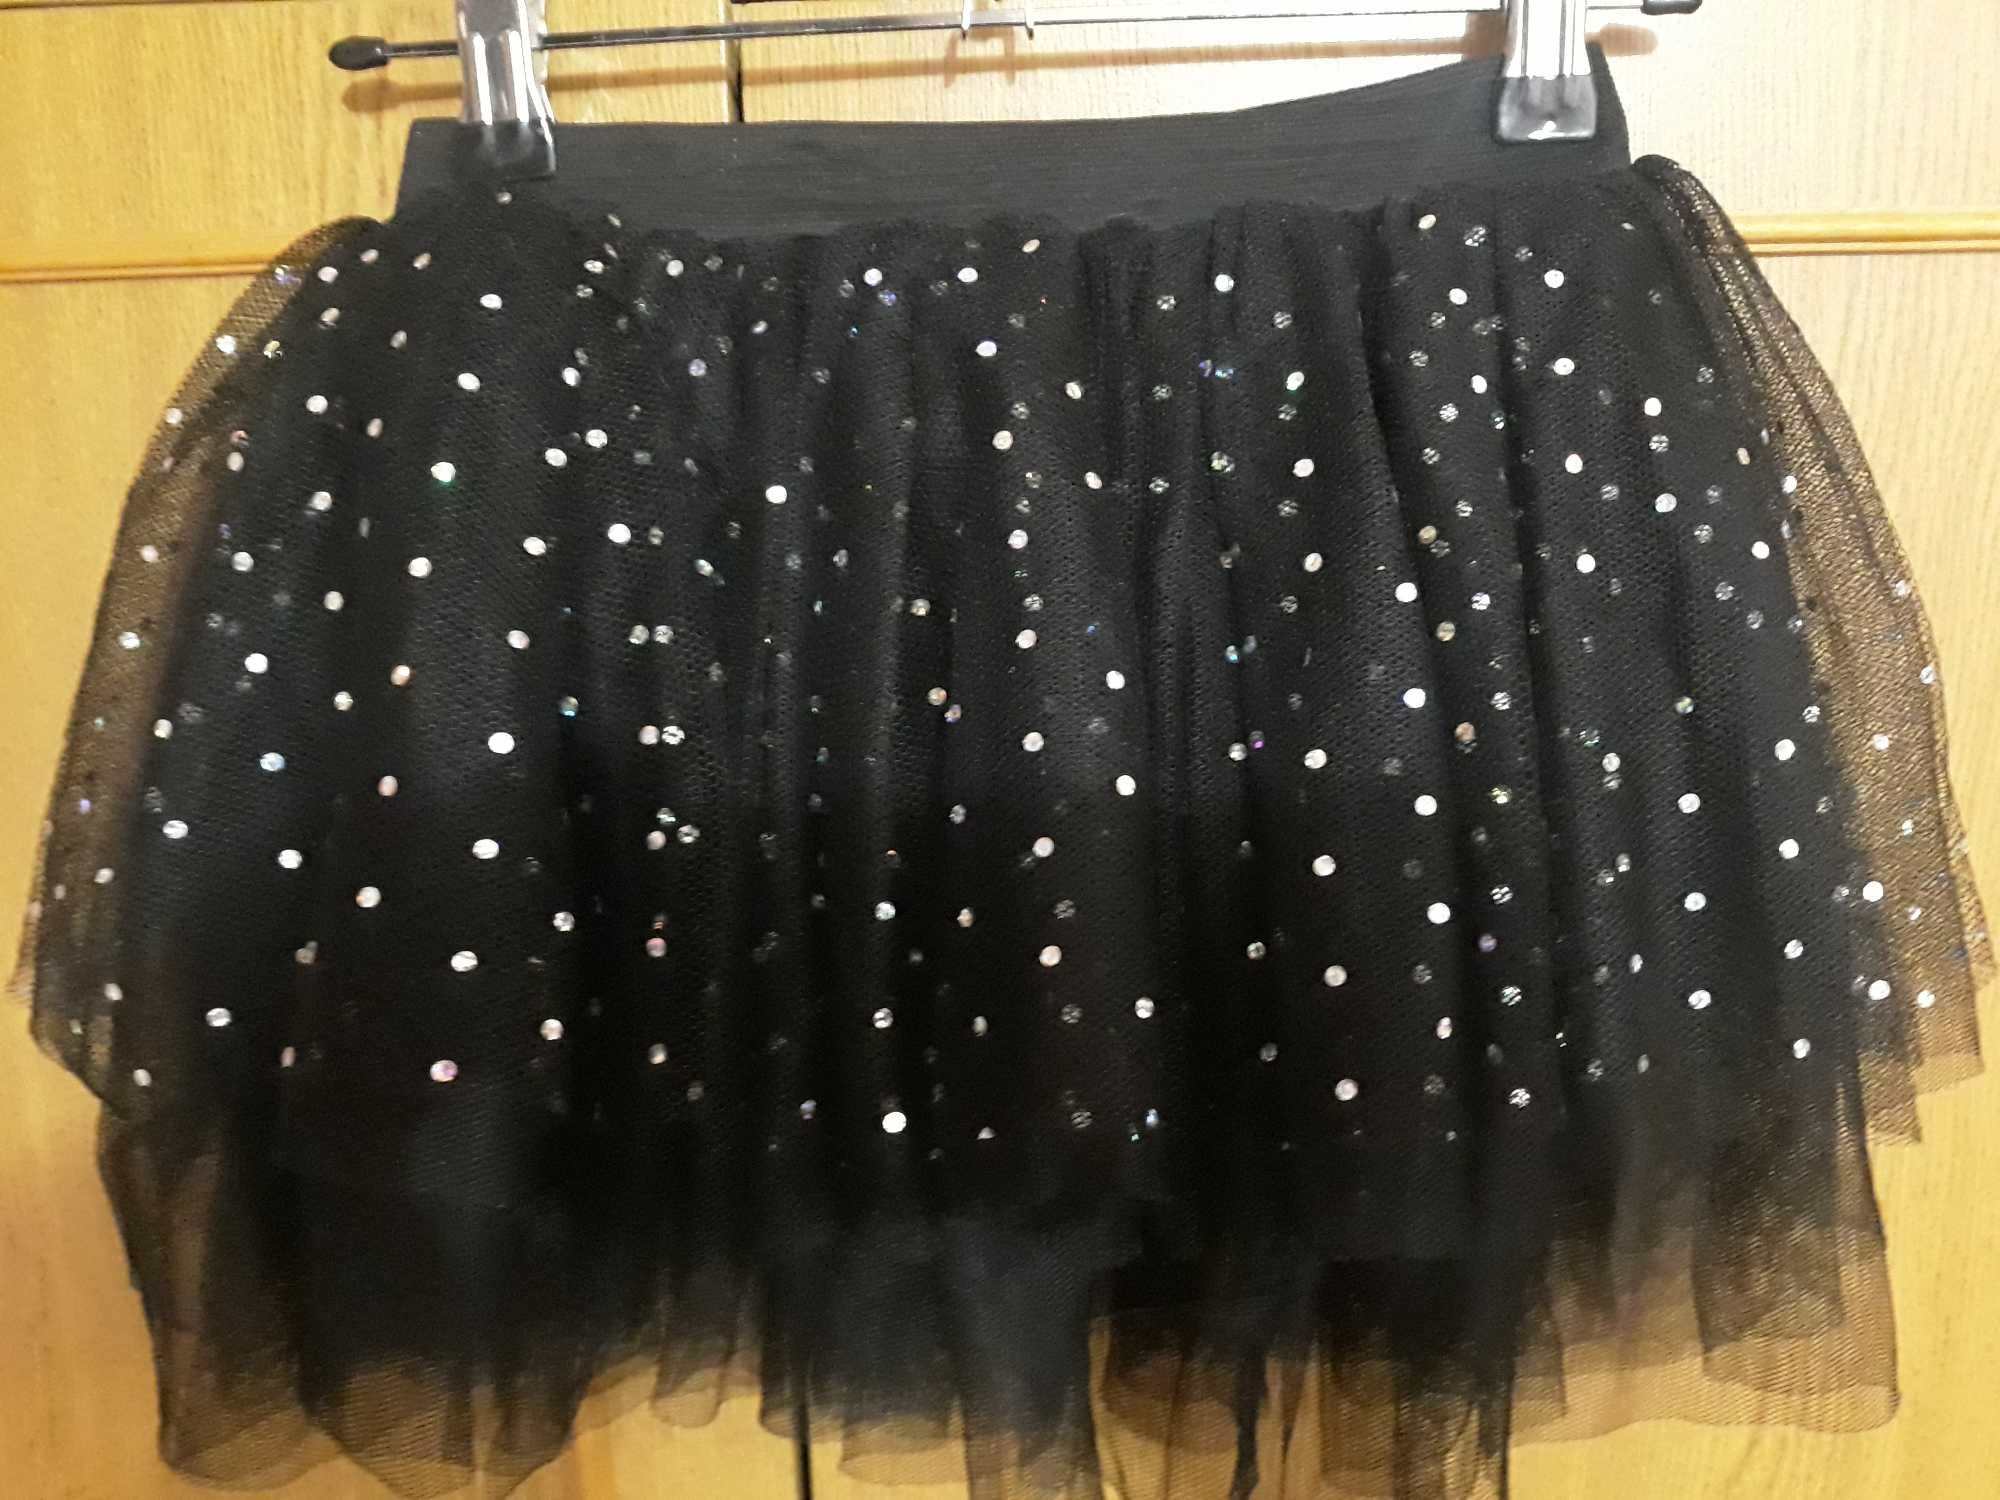 ethelaustin нарядная юбка со стразами на 10-11 лет